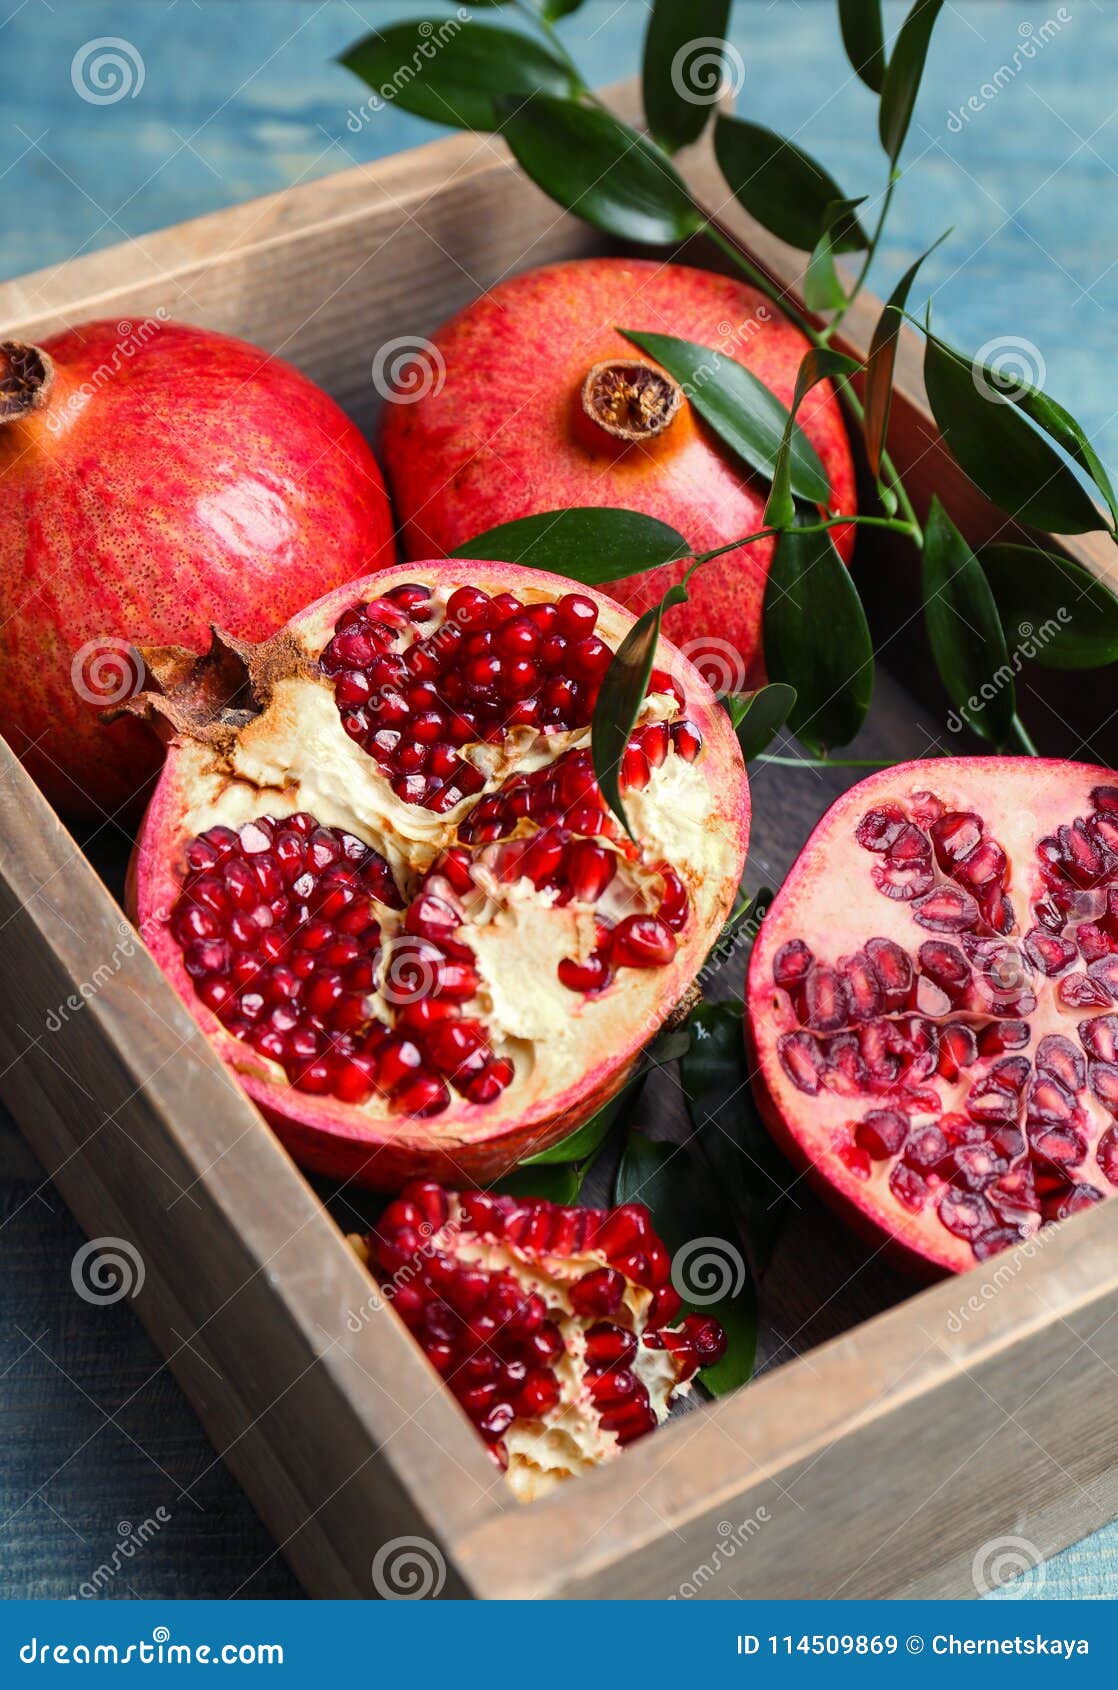 box with pomegranates